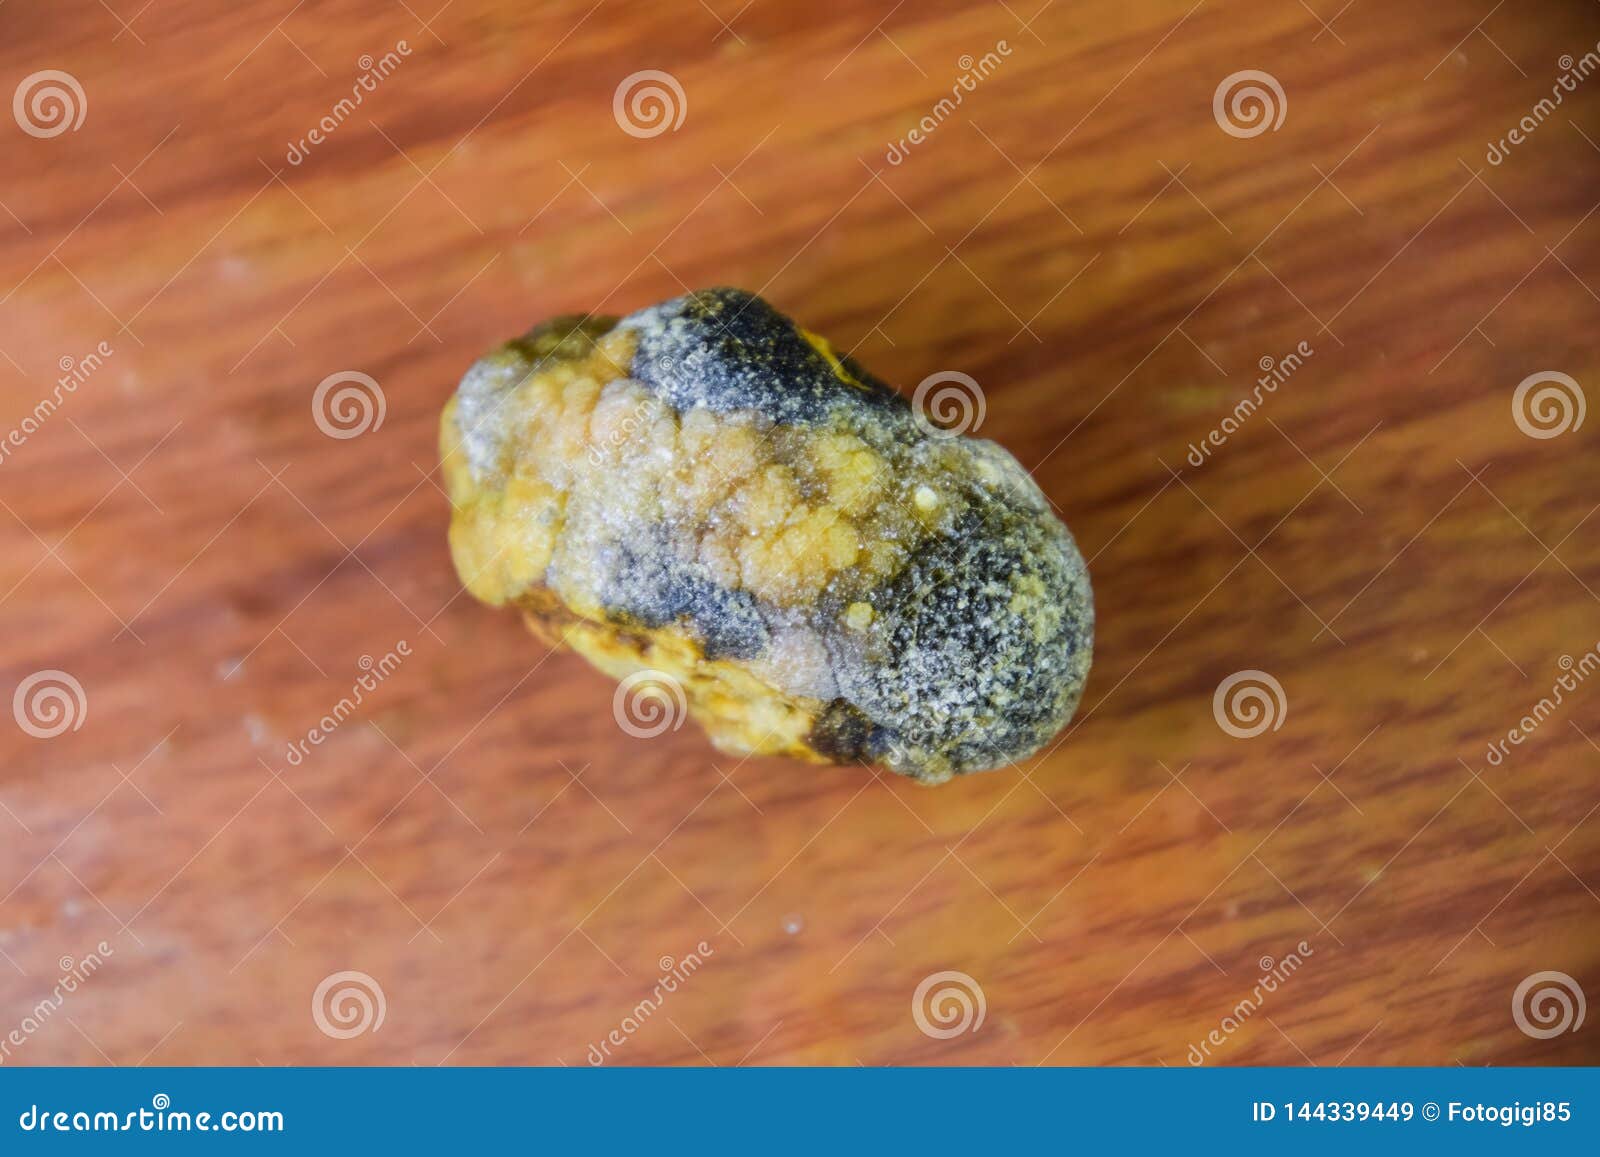 Камни из желчного вышли сами. Желчный пузырь камни до 7 мм. Камни в жёлчном пузыре смакропрепарат.